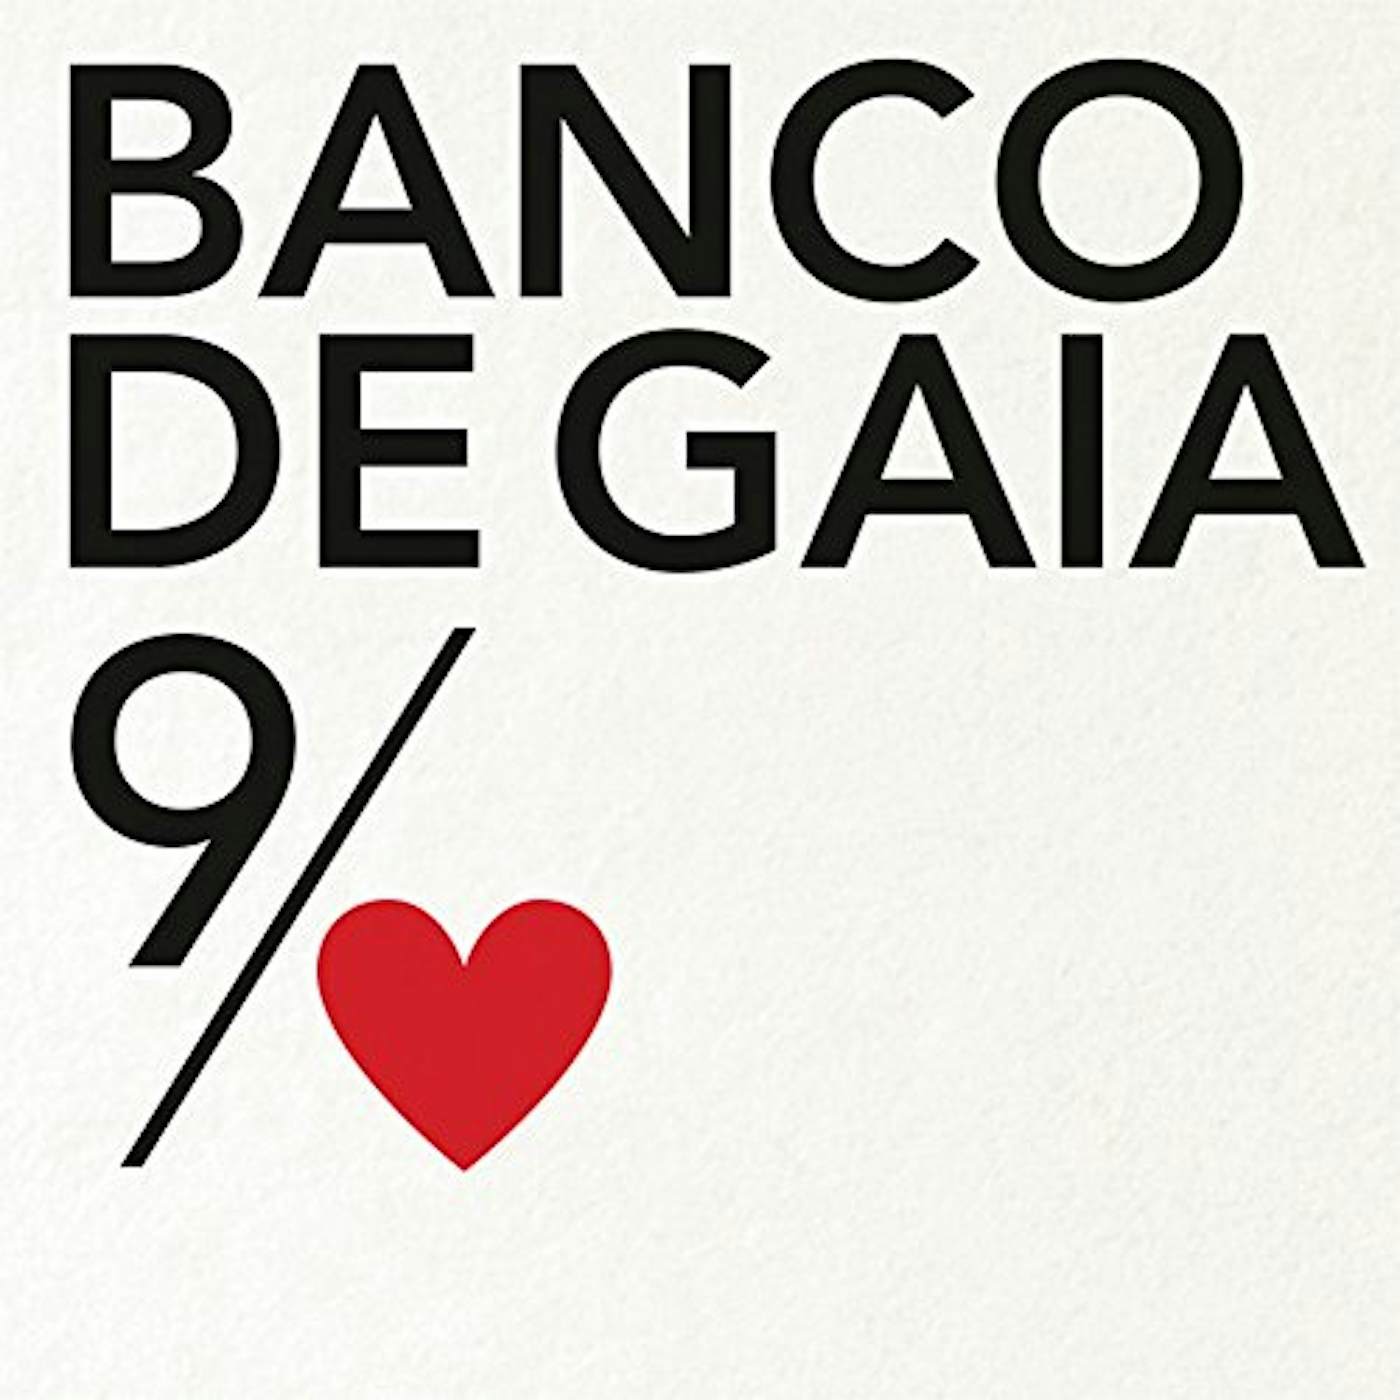 Banco De Gaia 9TH OF NINE HEARTS CD